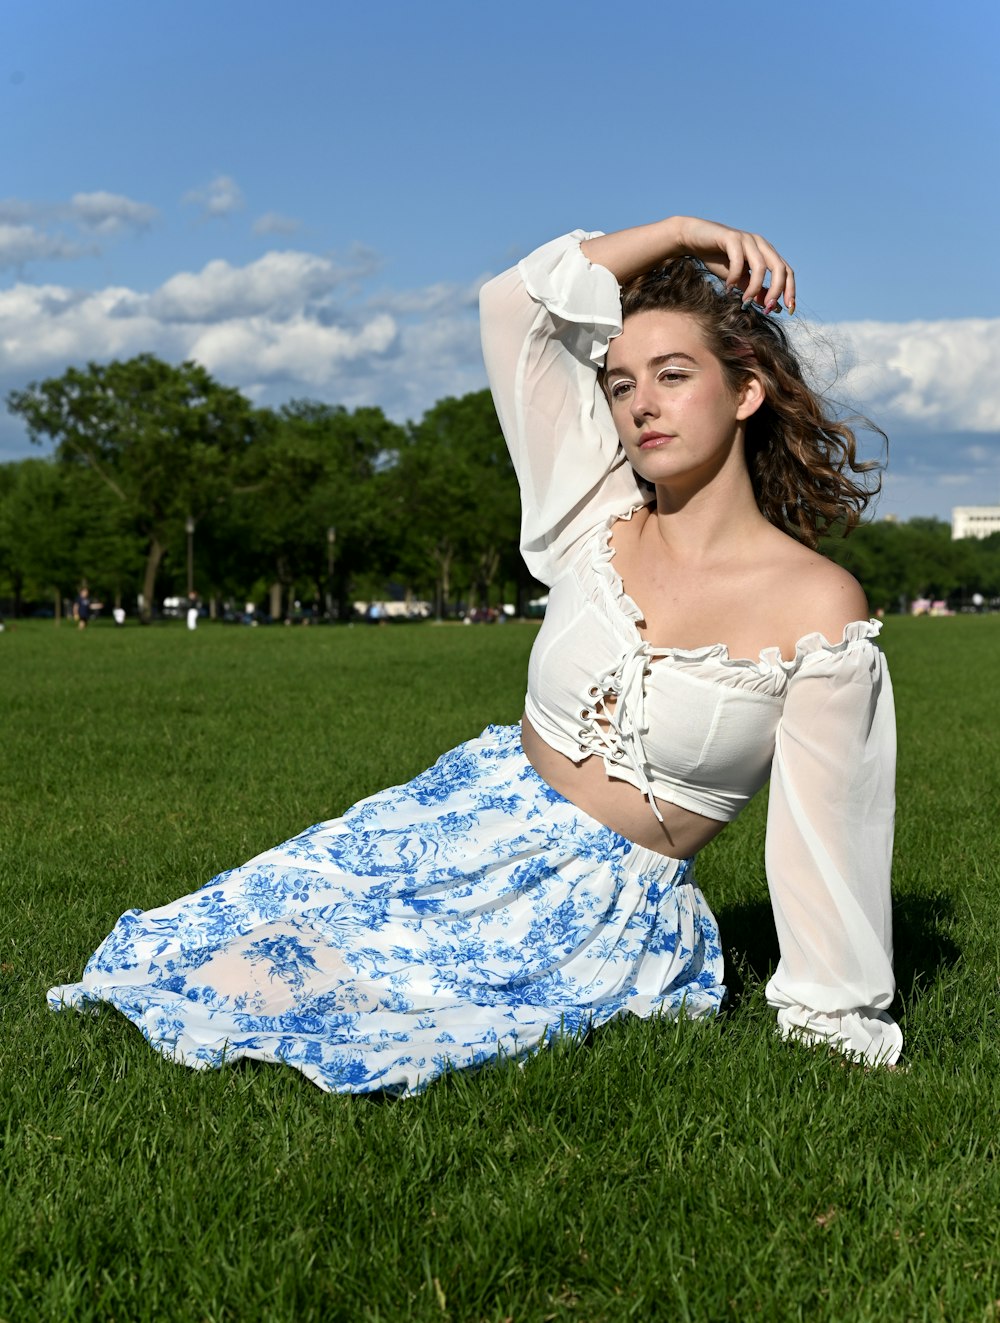 青空の下の緑の草原に横たわっている白と青の花柄のドレスを着た女性